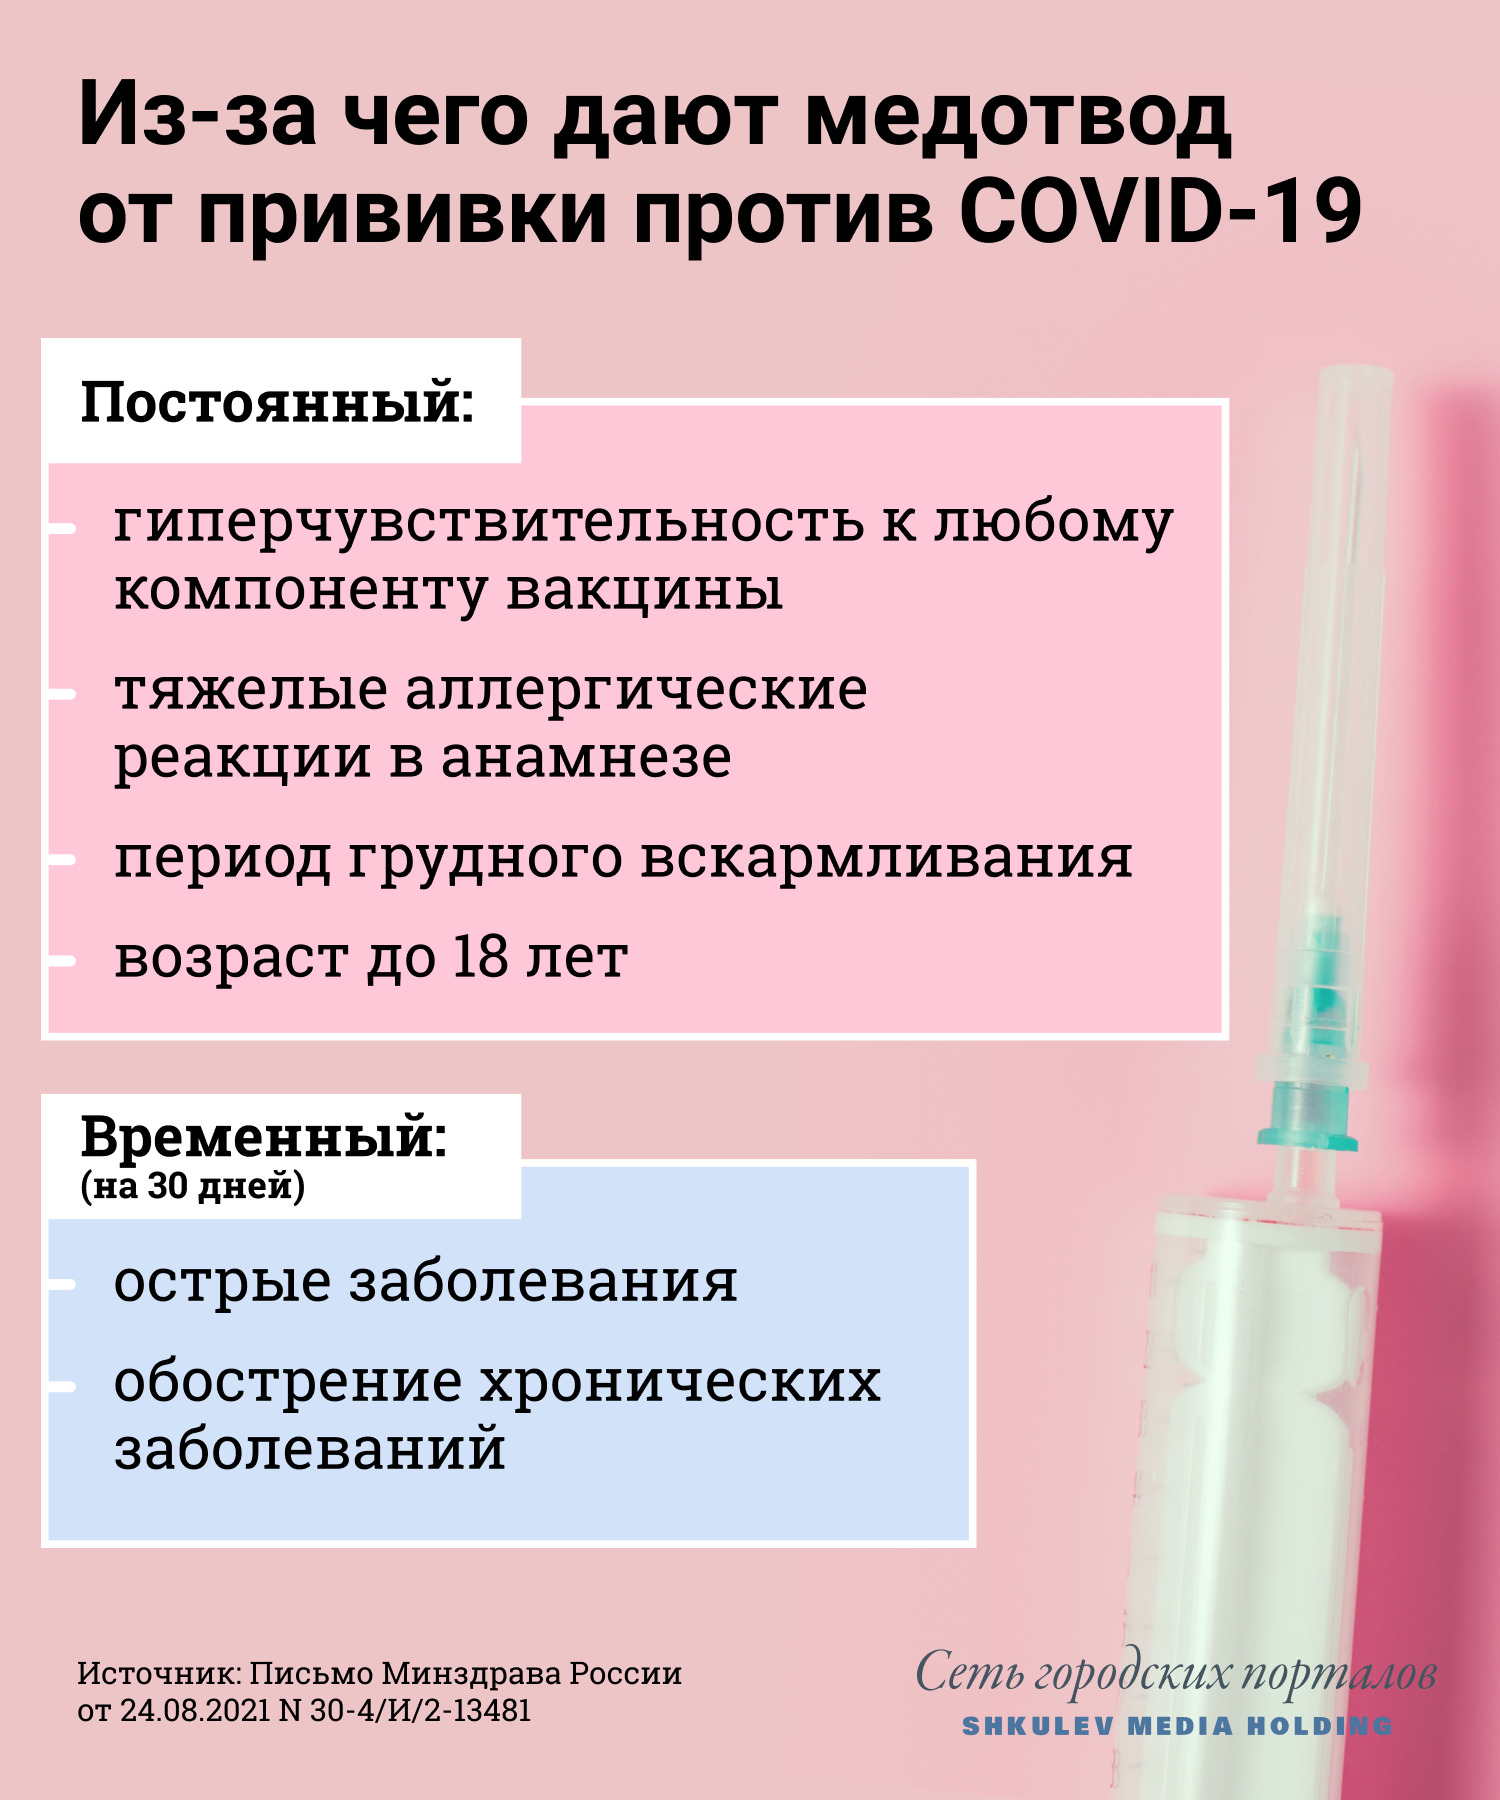 Для постоянного медотвода от всех прививок против ковида сейчас есть четыре основания